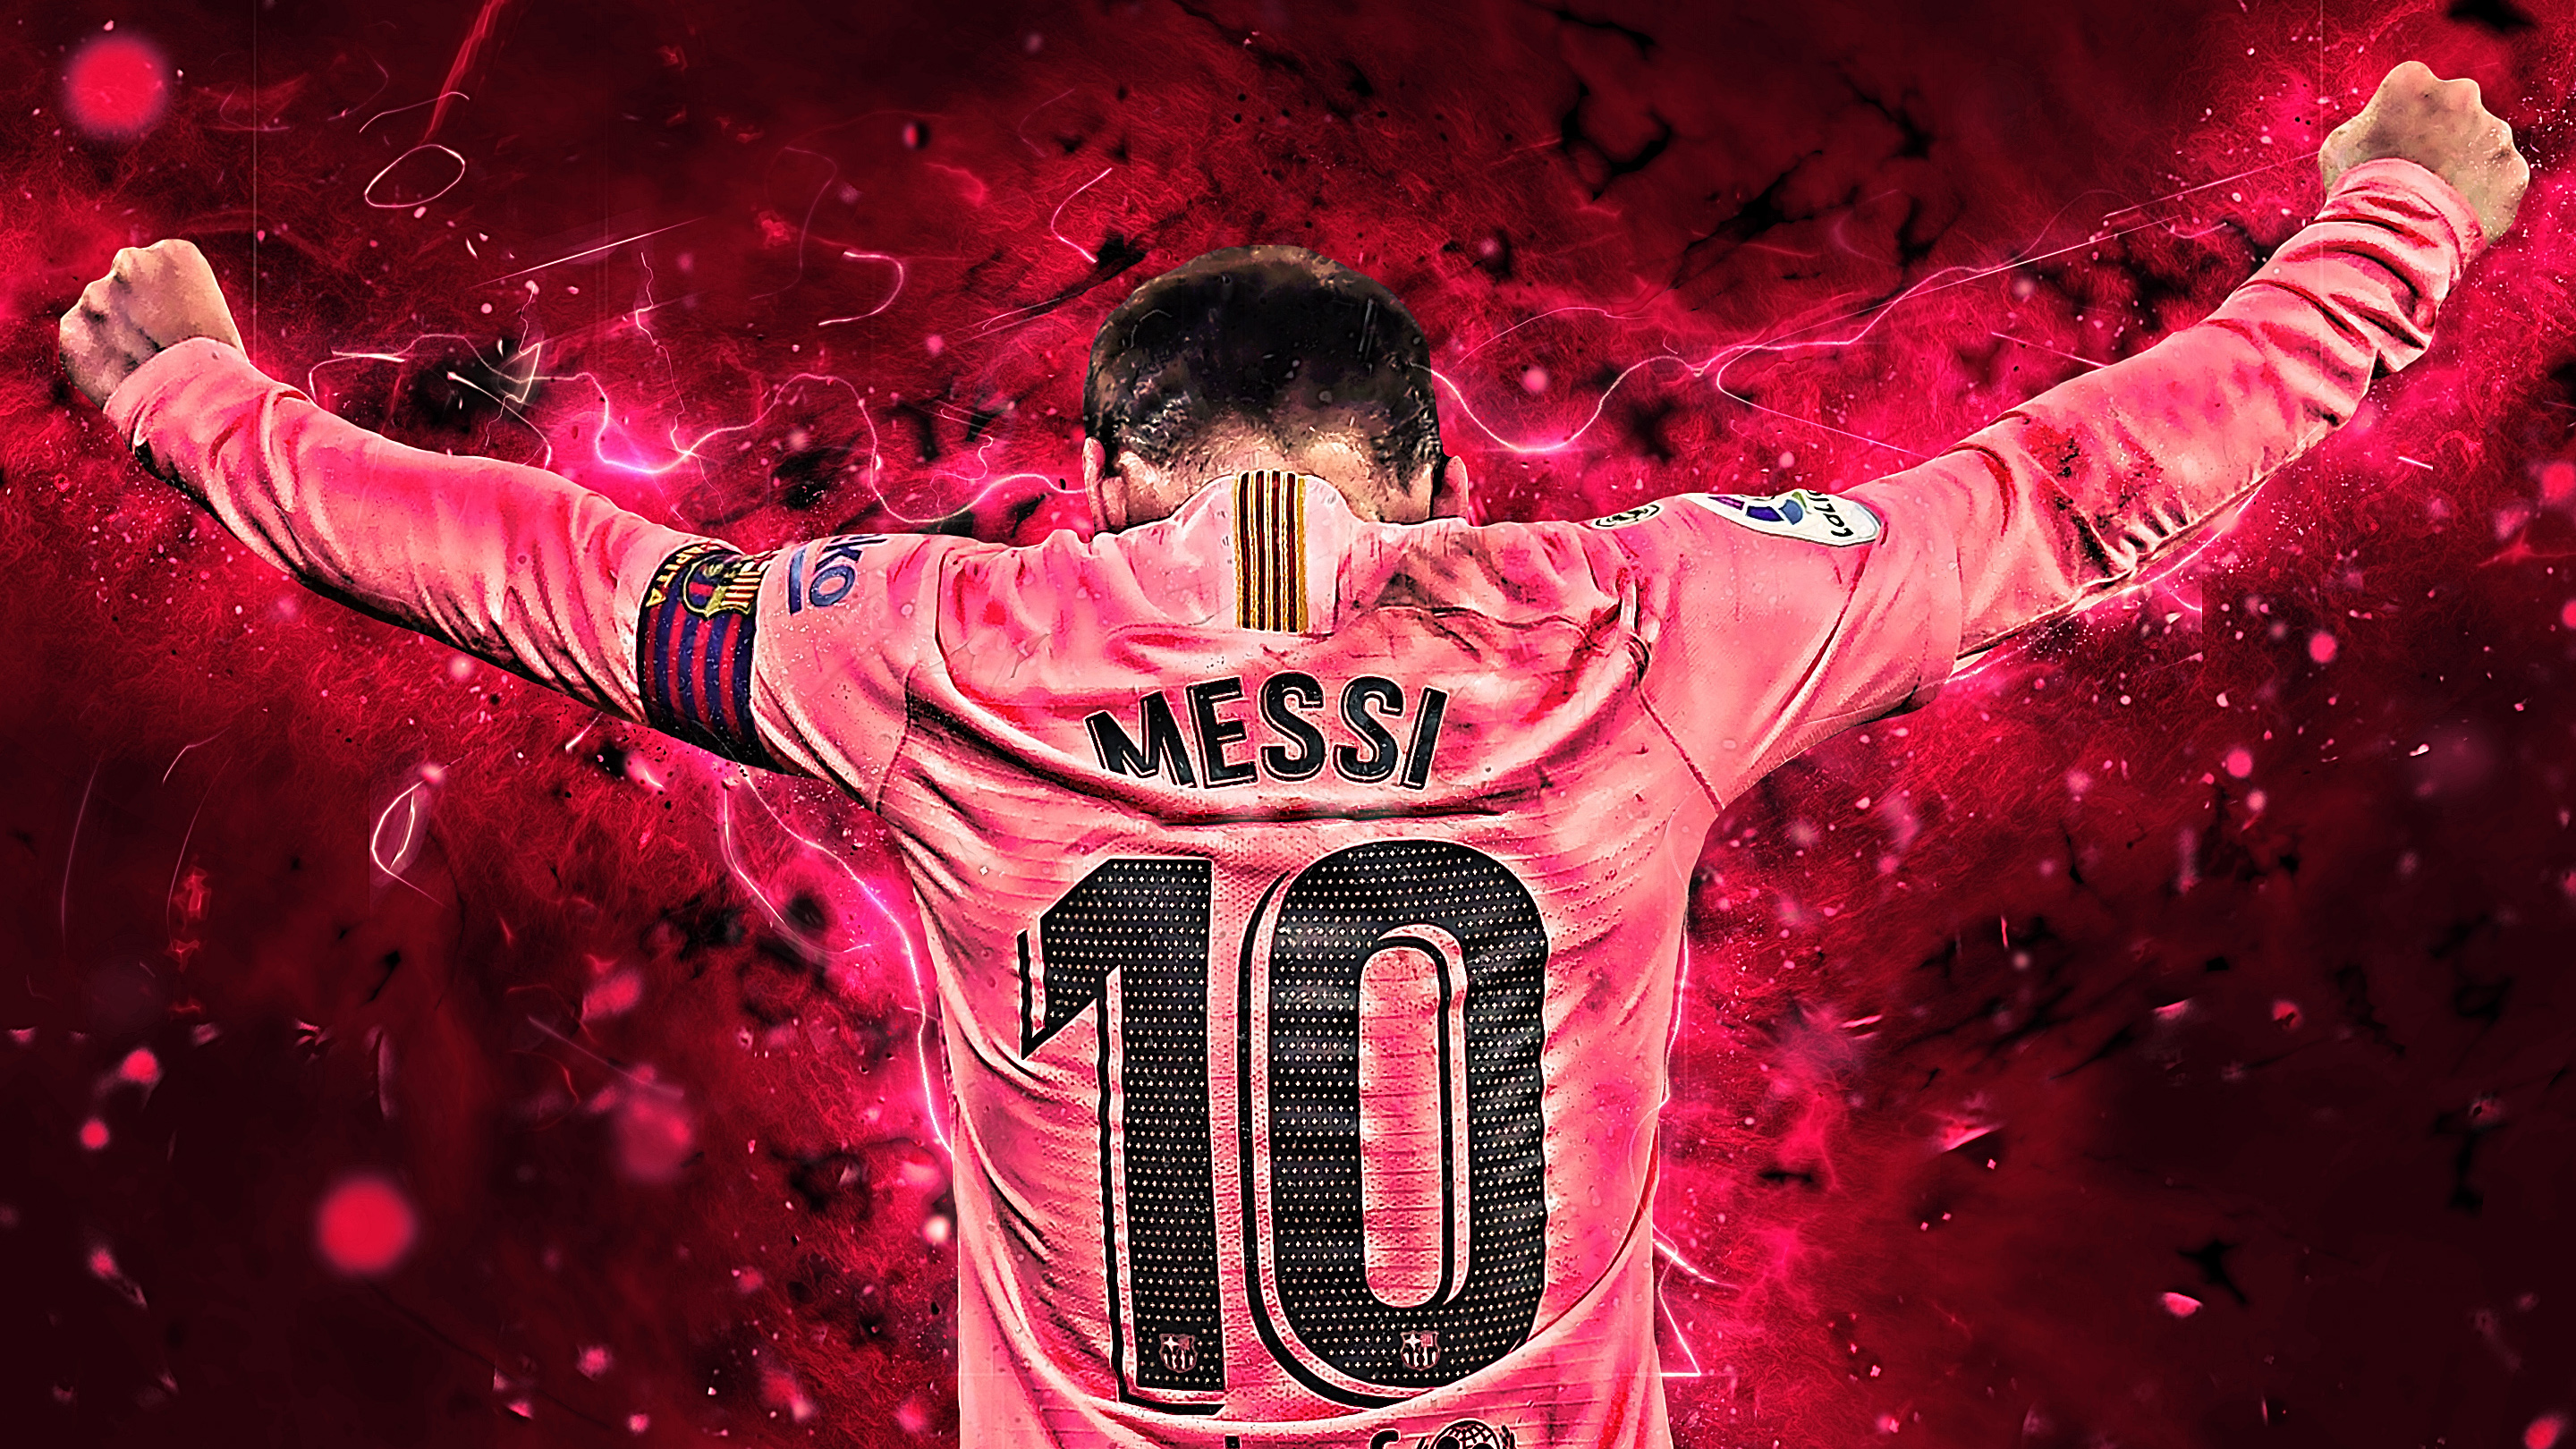 Hình nền Messi 2019 cho máy tính bảng sẽ giúp bạn cập nhật được những thông tin mới nhất về sự nghiệp của ngôi sao bóng đá này. Hãy xem hình nền này để cảm nhận được sự phát triển của Messi theo thời gian.